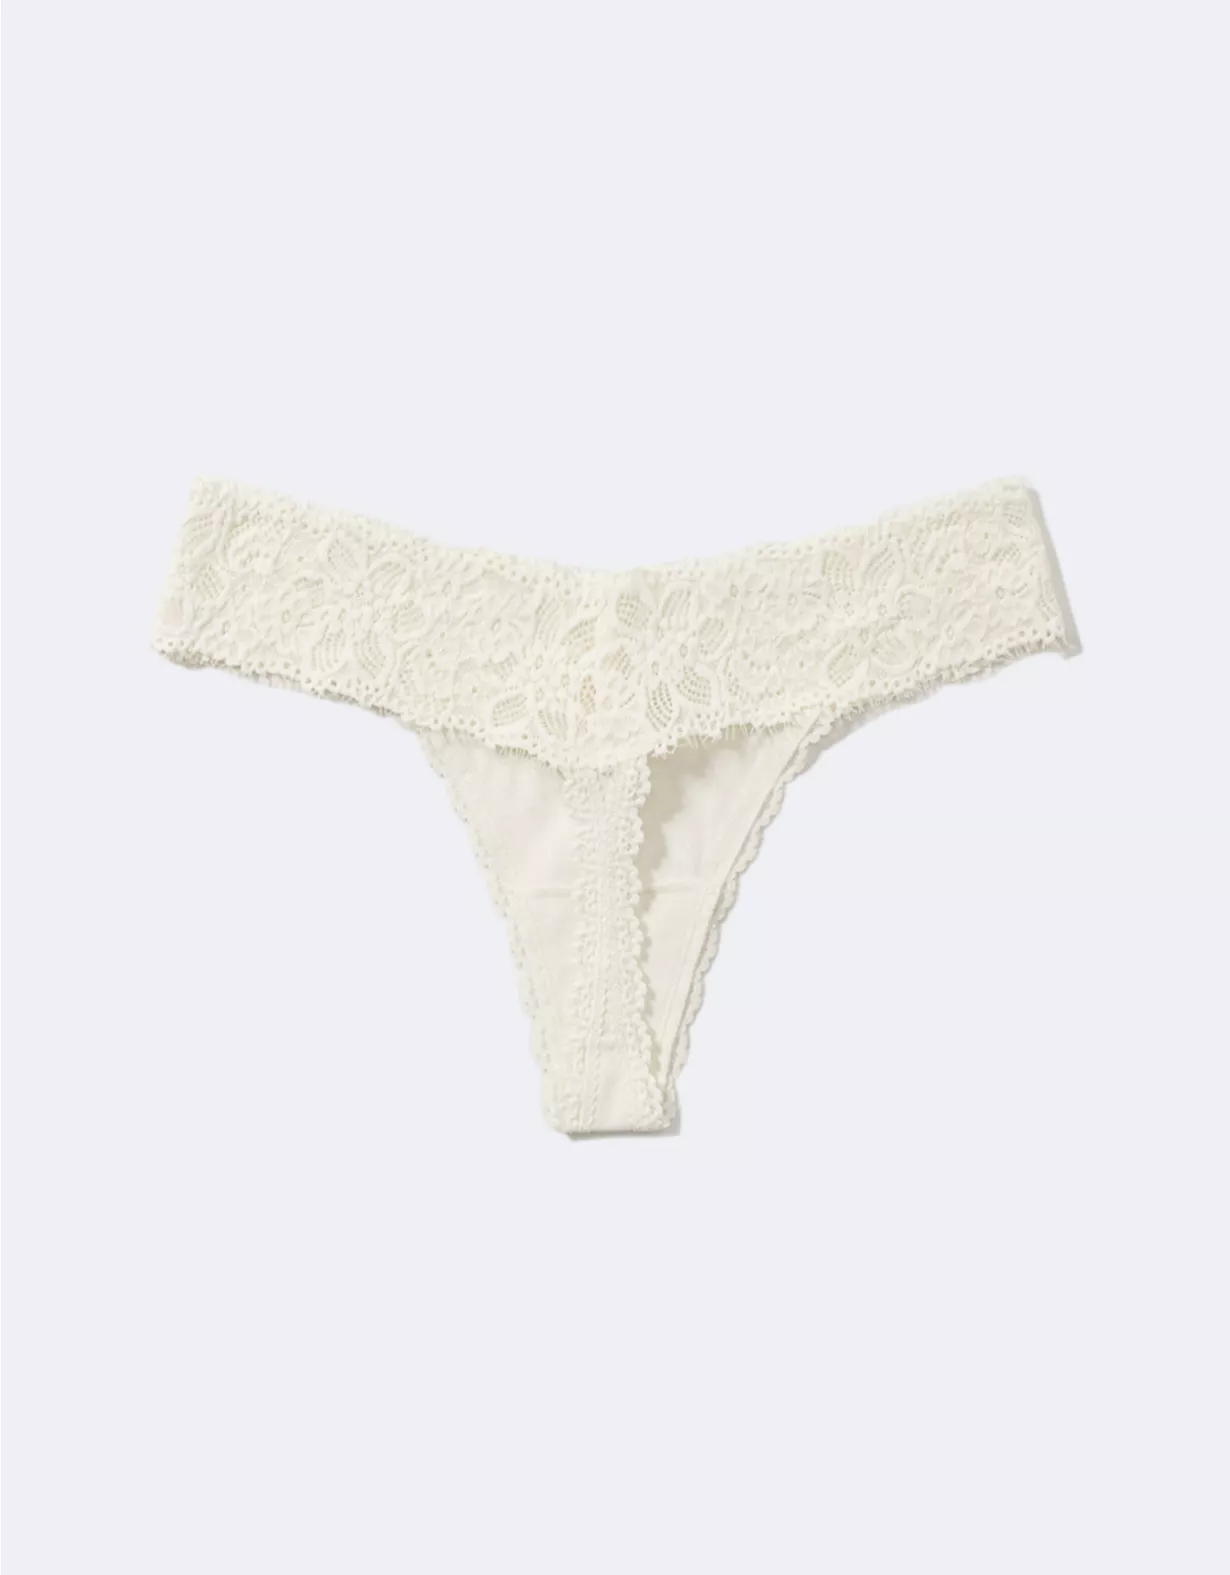 Aerie Cotton Eyelash Lace Thong Underwear